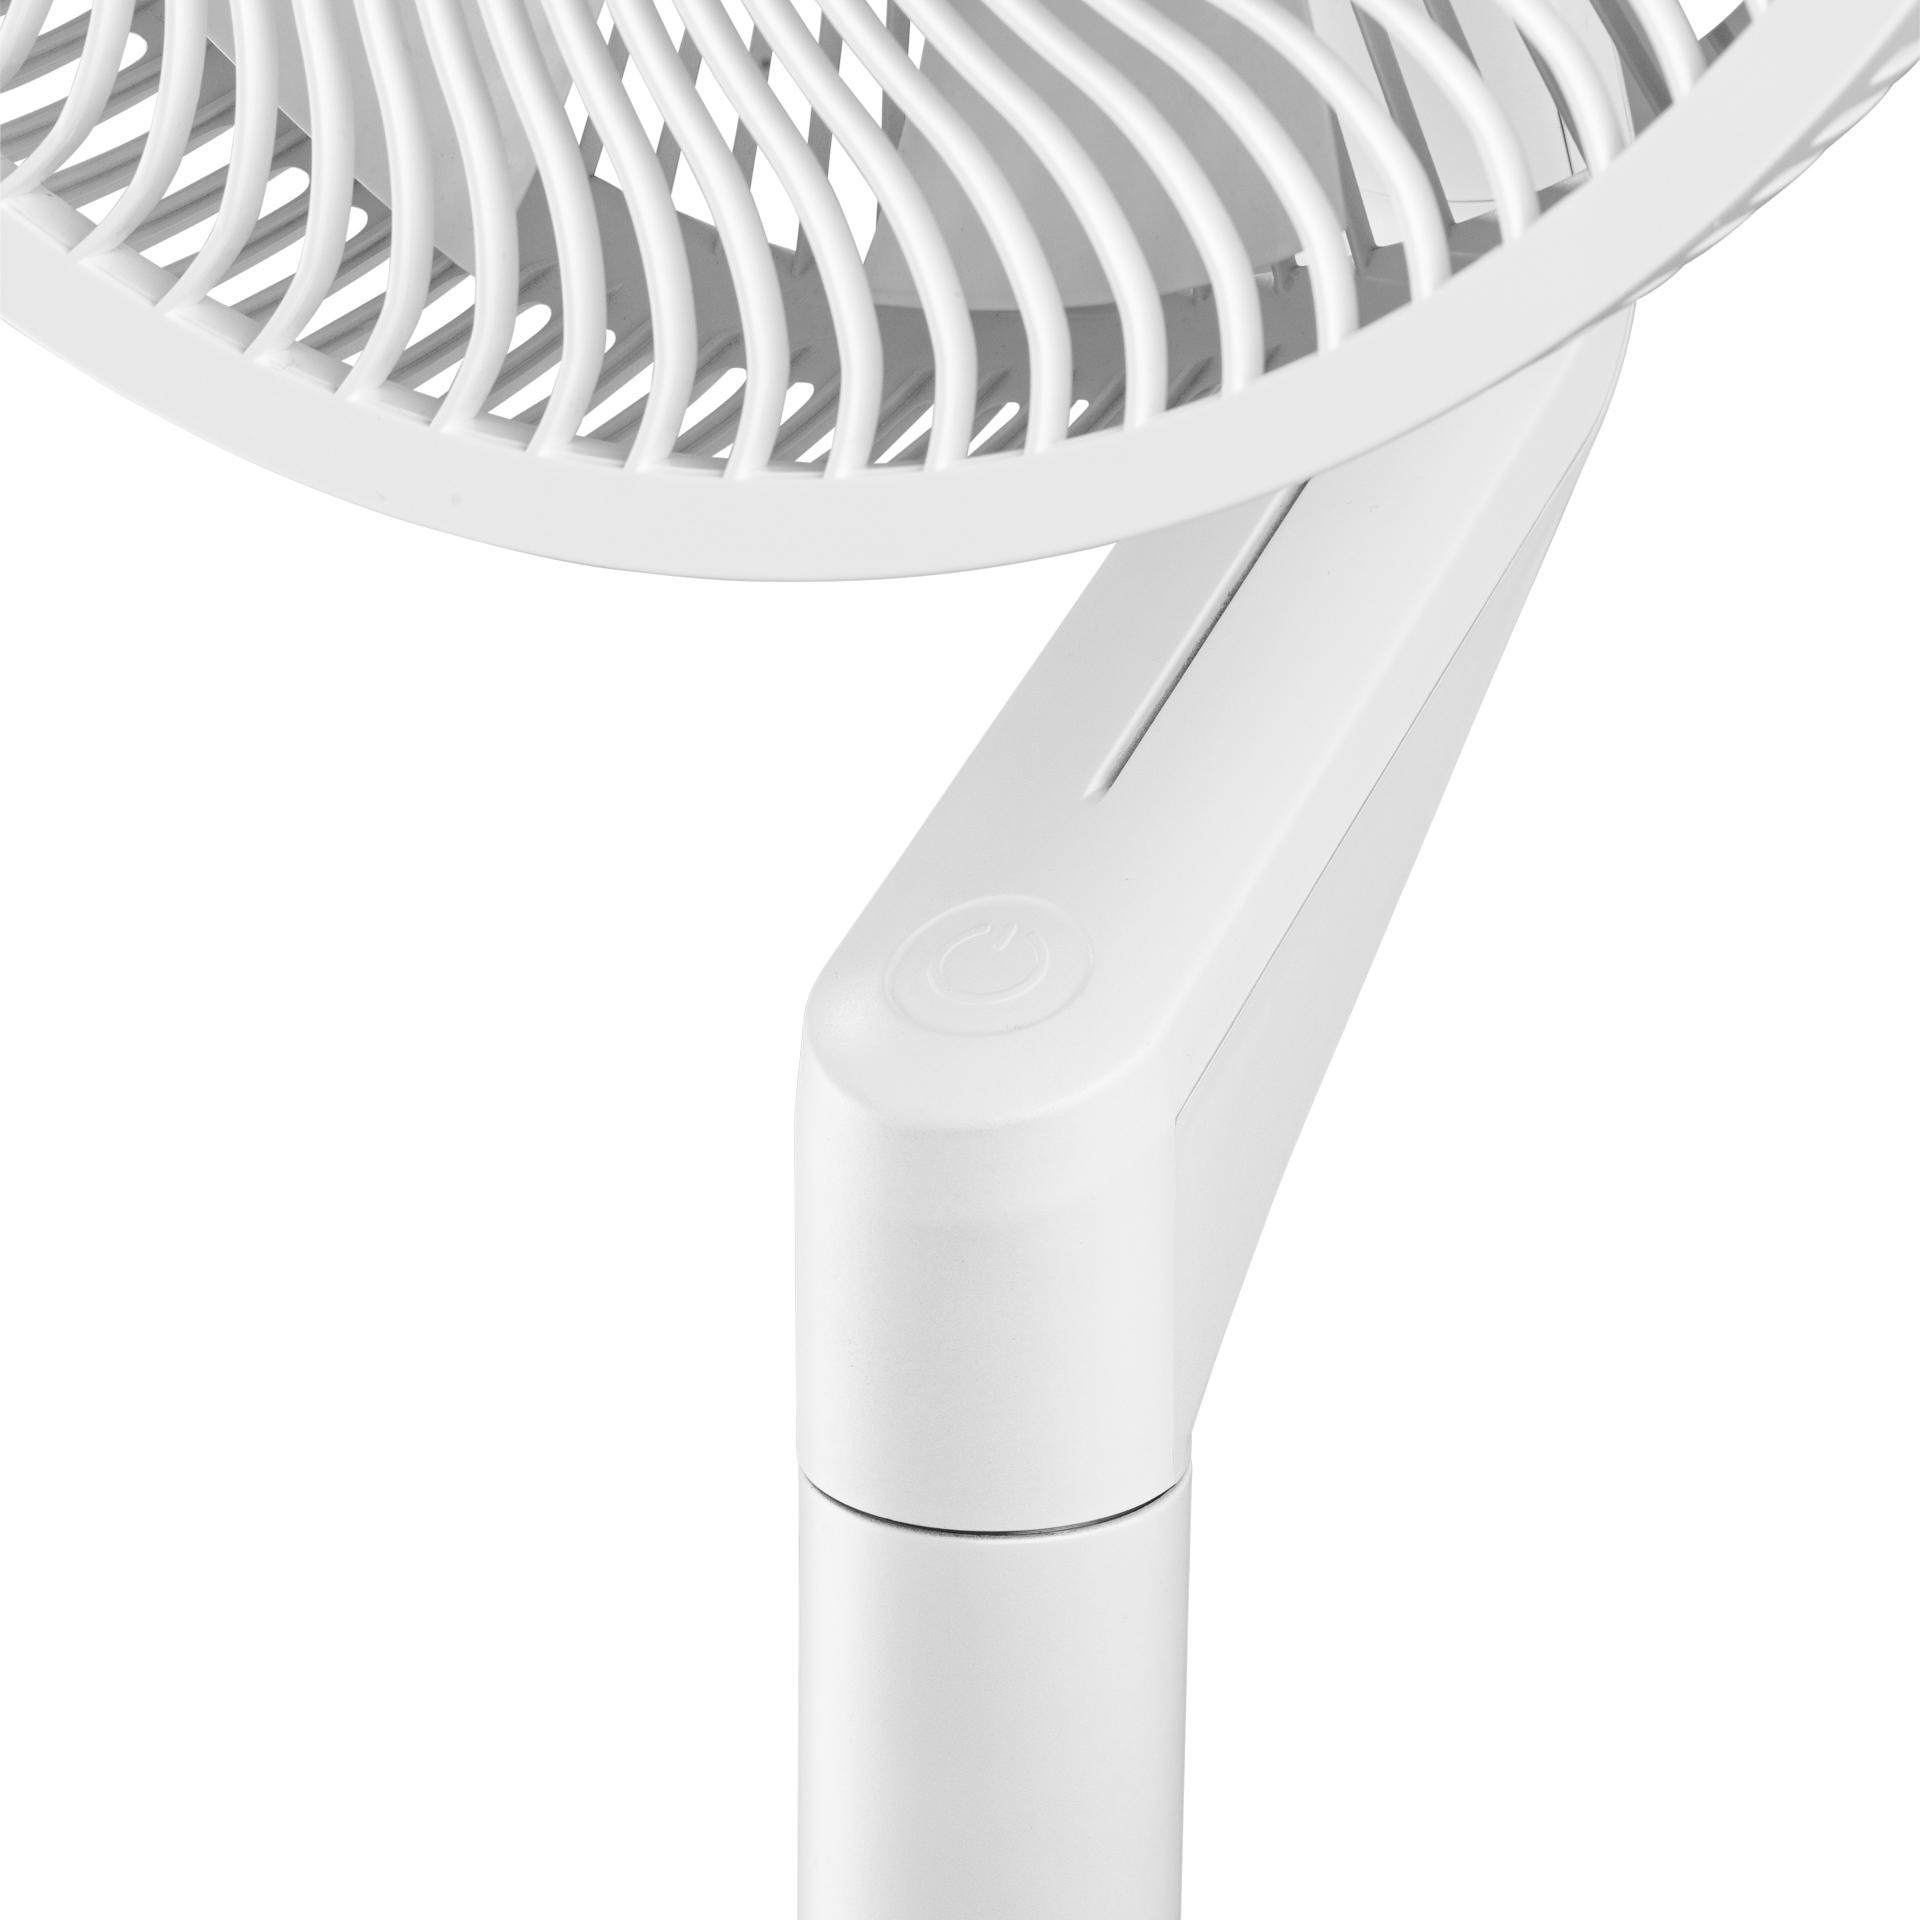 DUUX DXF51 Weiß Fan Ultimate Whisper (32 Watt) Standventilator Flex